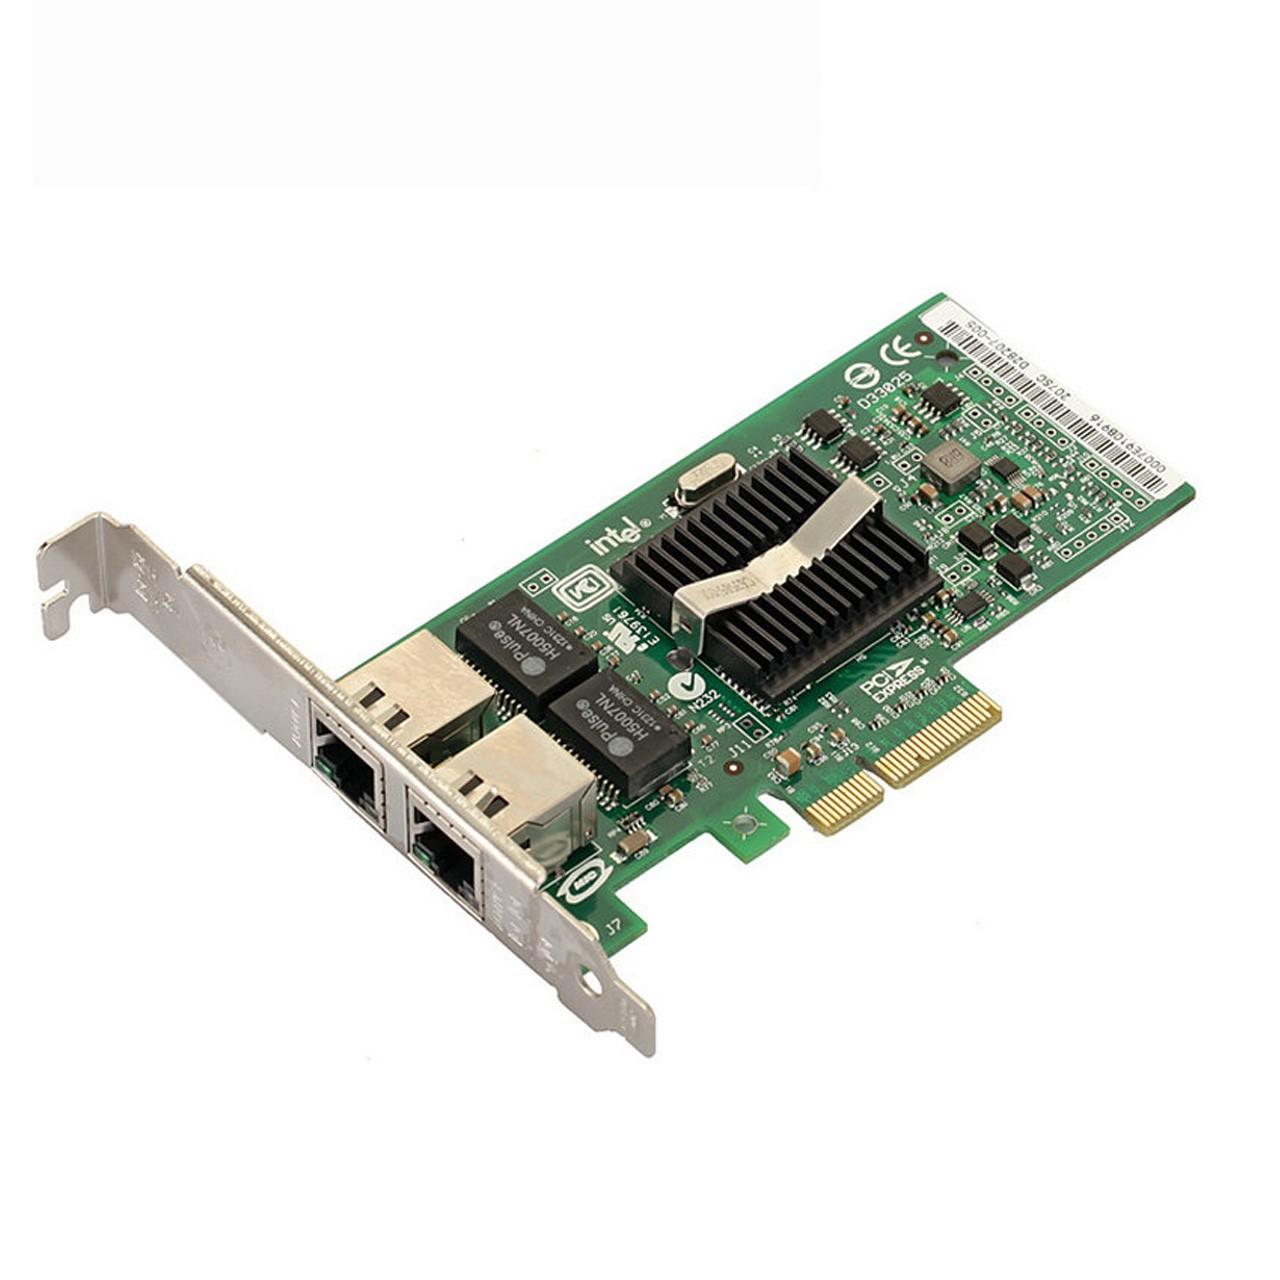 کارت شبکه حرفه ای Intel دو پورت PCIe گیگابیت مدل EXPI9402PTBL با چیپ INTEL 82571EB